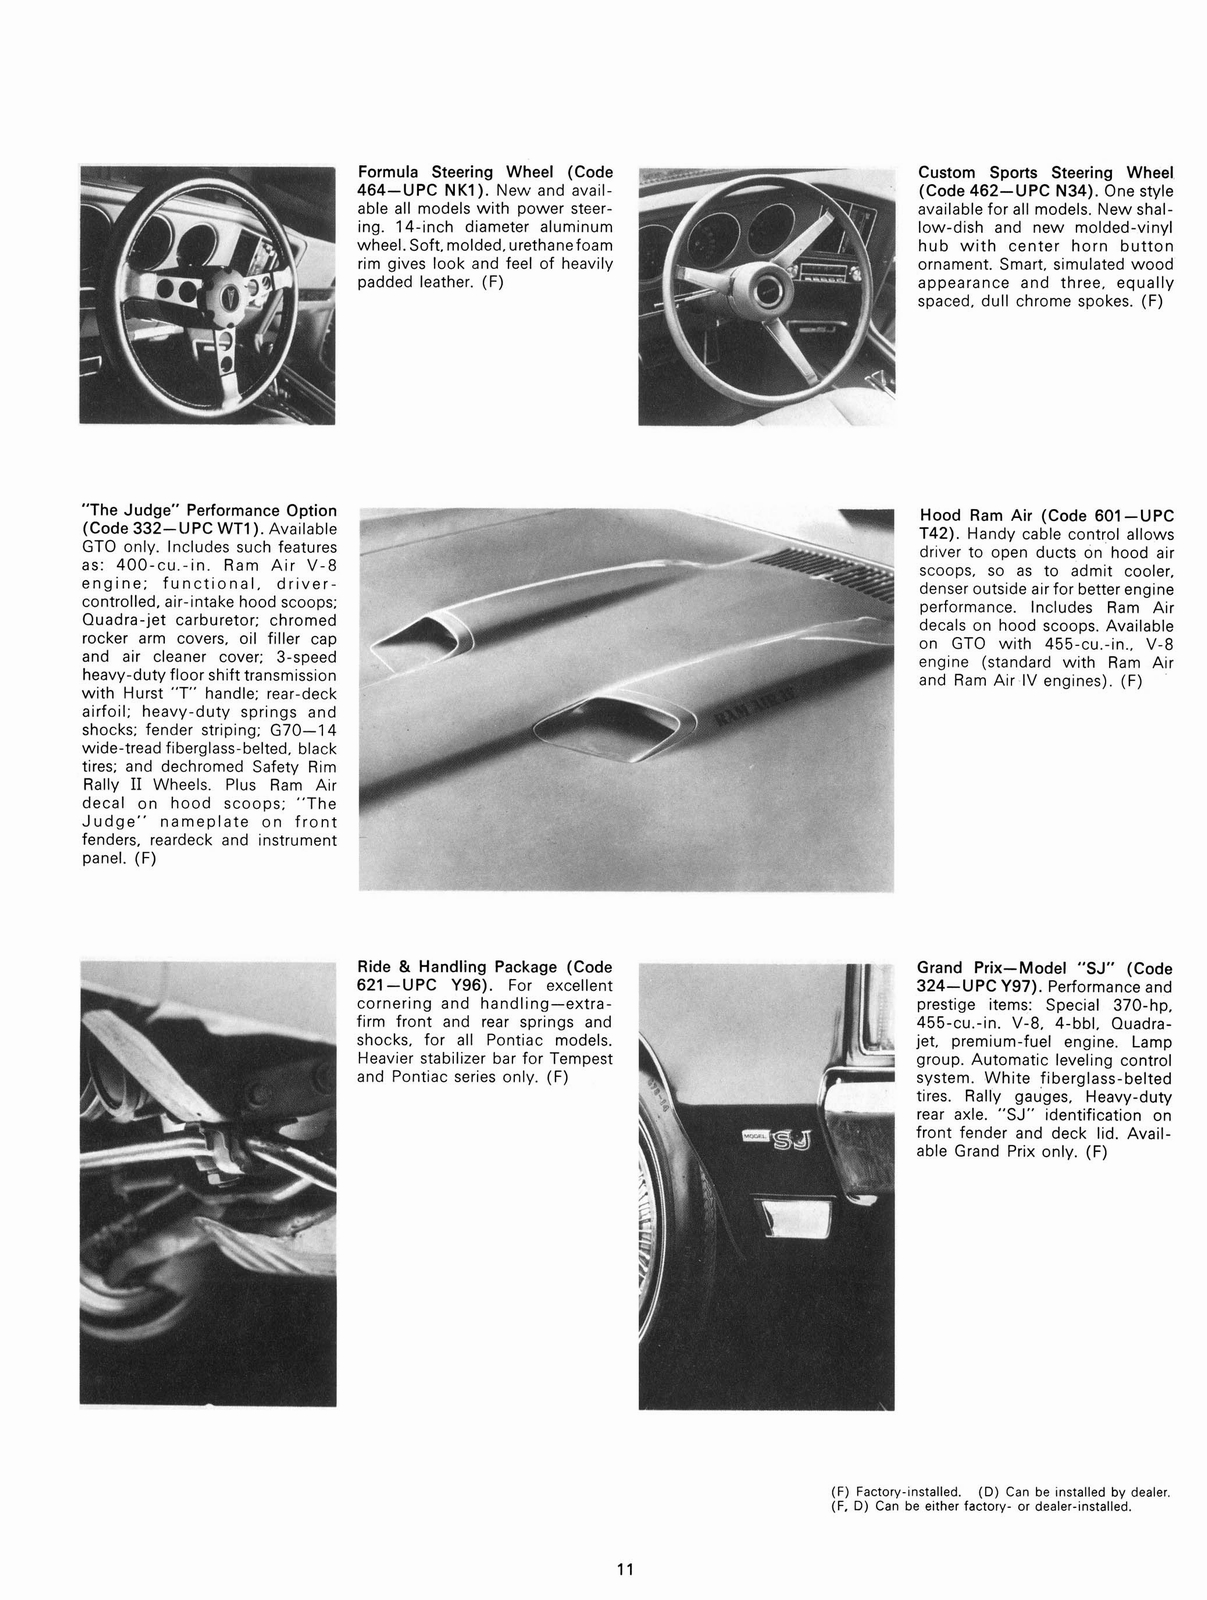 n_1970 Pontiac Accessories-11.jpg